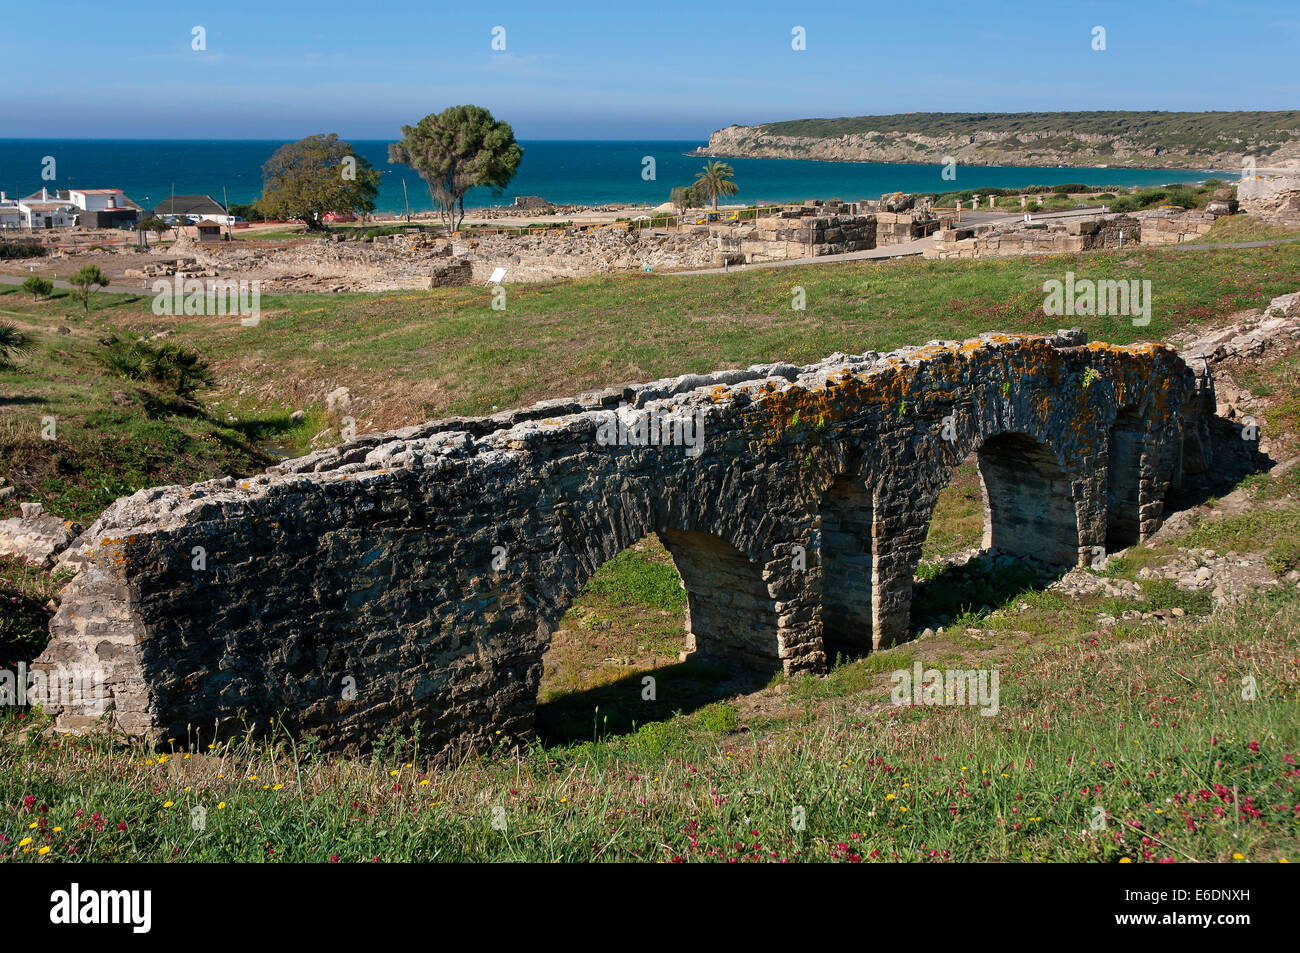 Römische Ruinen von Baelo Claudia-Aquädukt von Punta Paloma, Tarifa, Cadiz Provinz, Region von Andalusien, Spanien, Europa Stockfoto